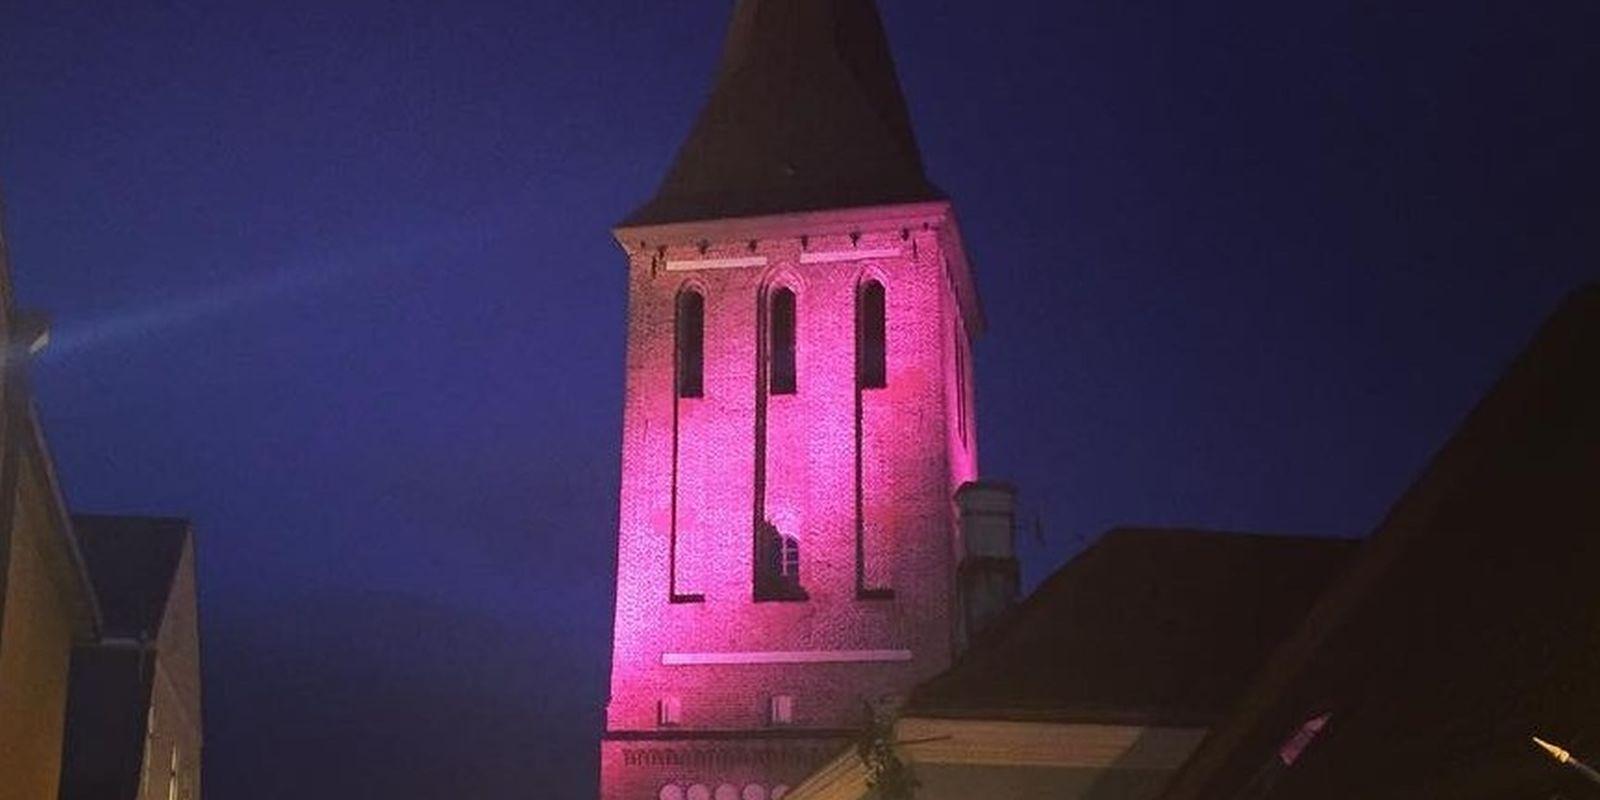 Tarton Johanneksen kirkon torni